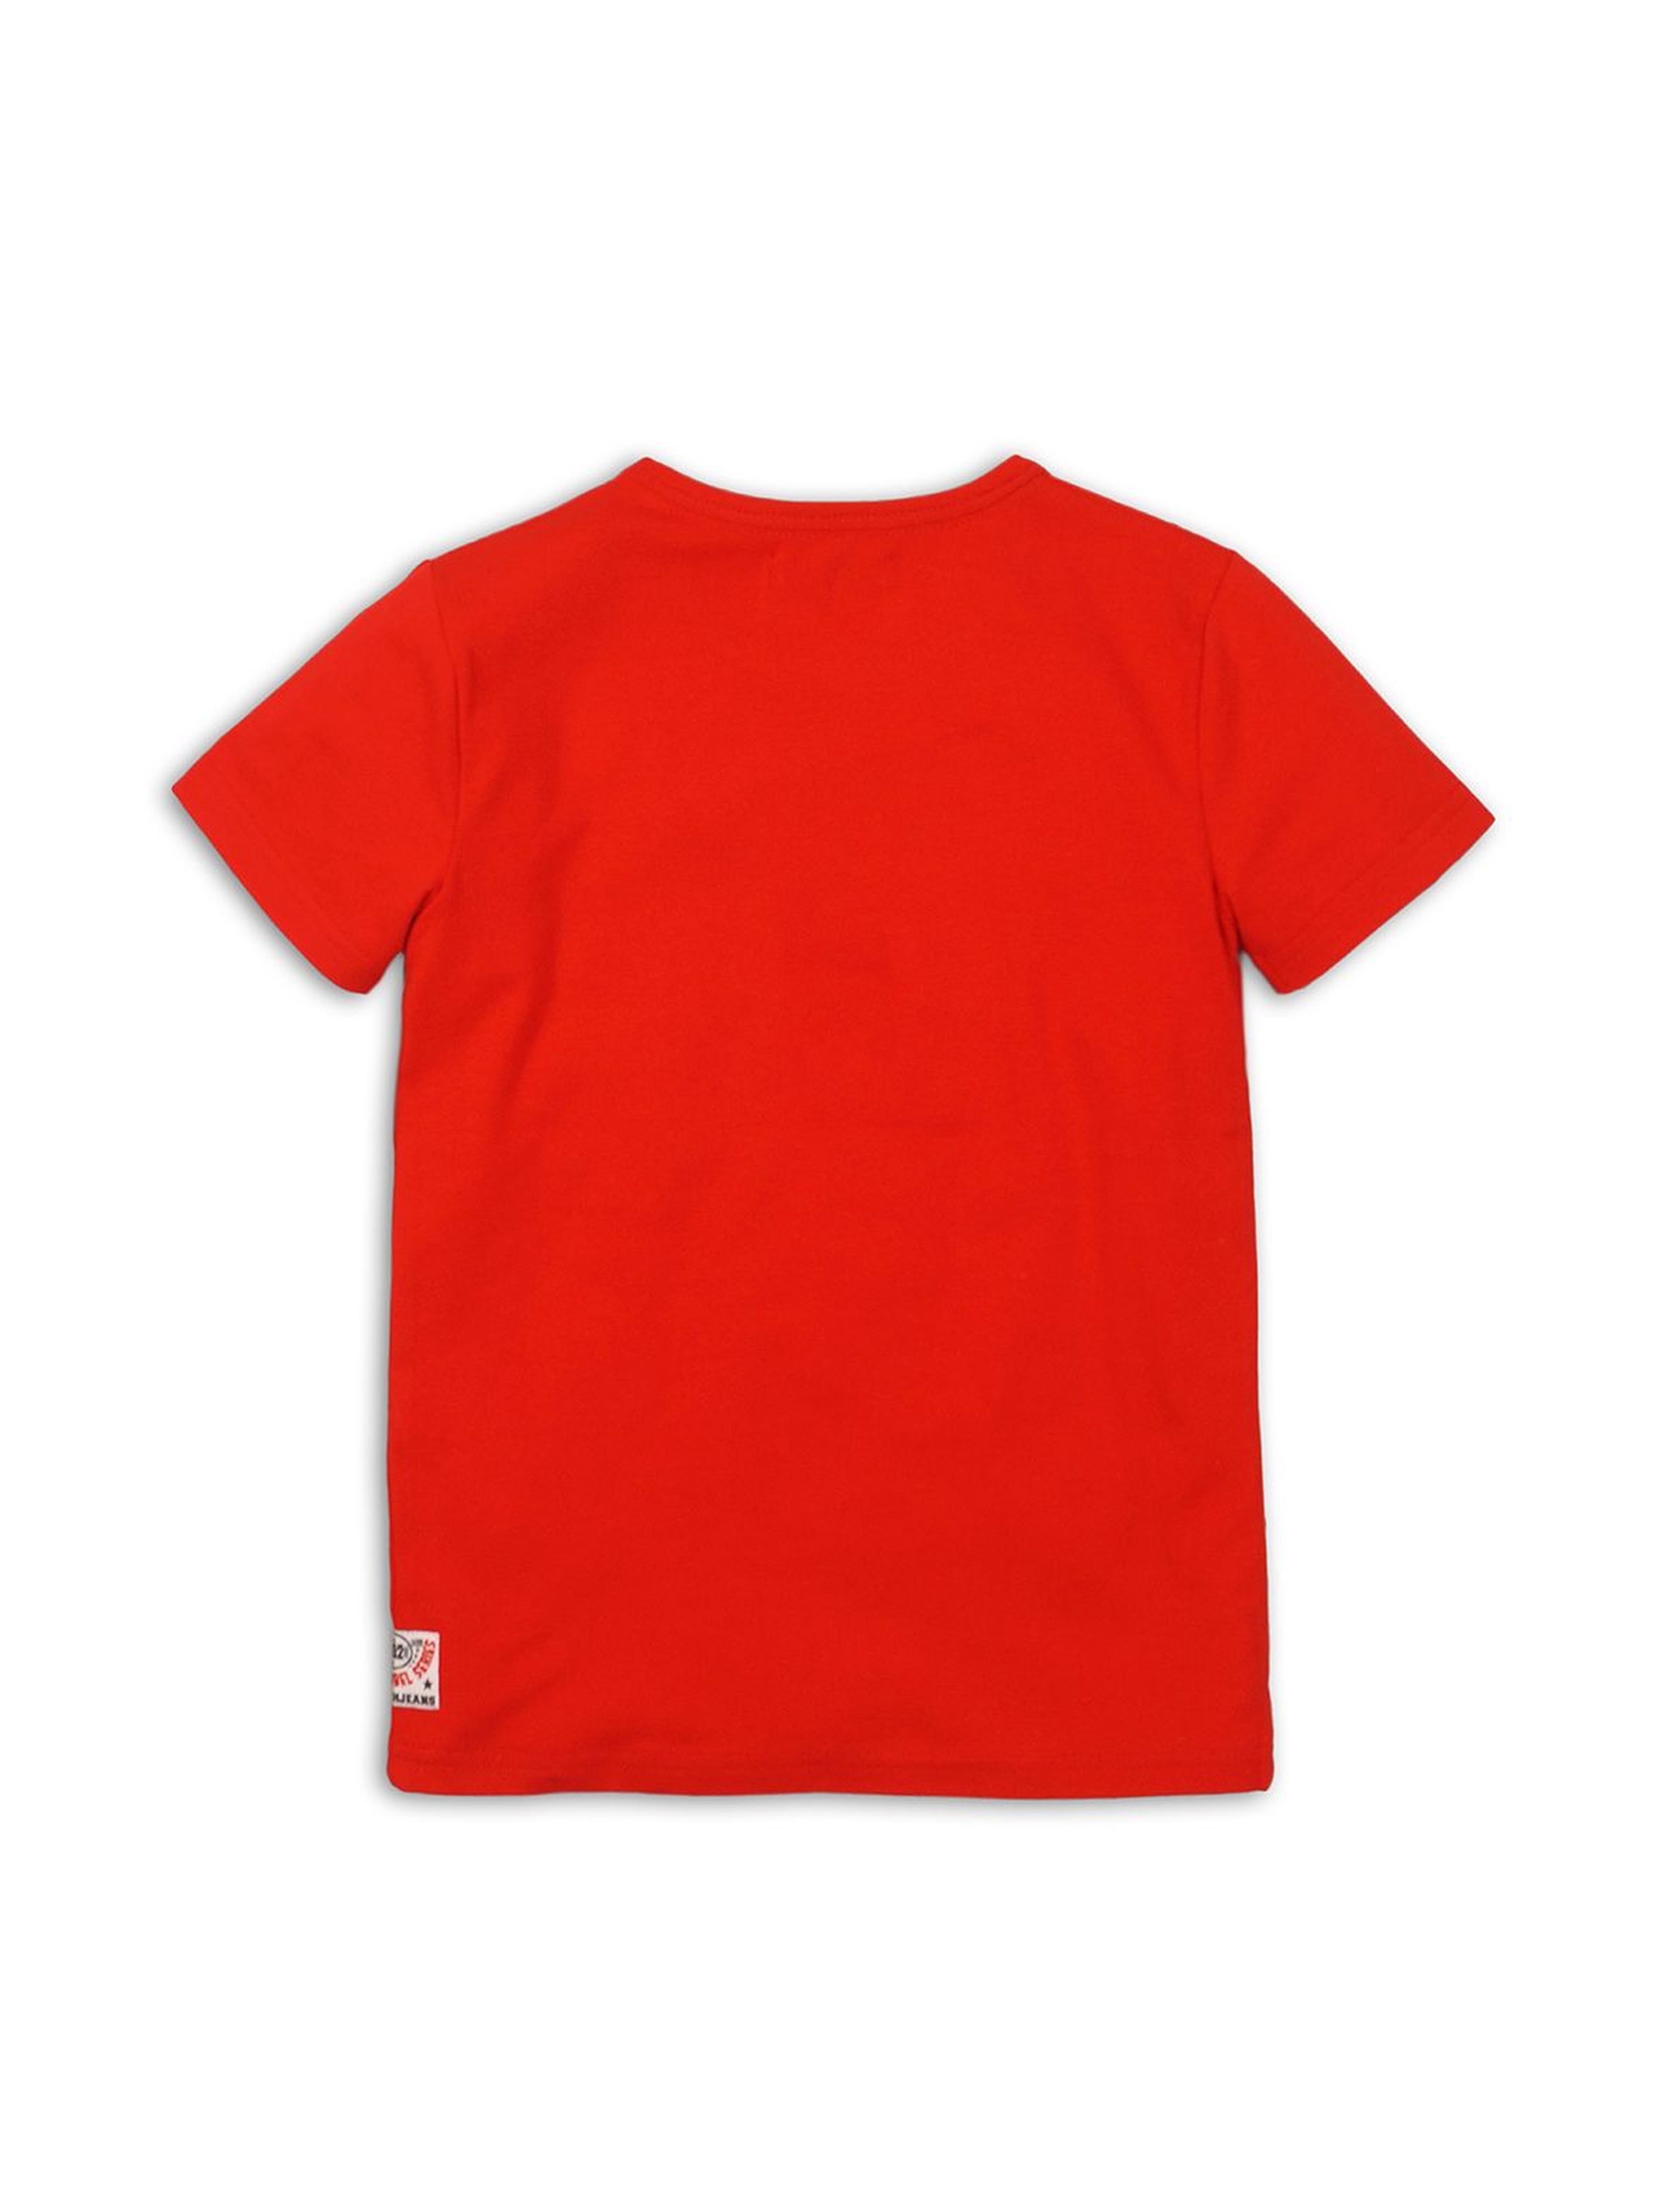 T-shirt chłopięcy czerwony z nadrukiem